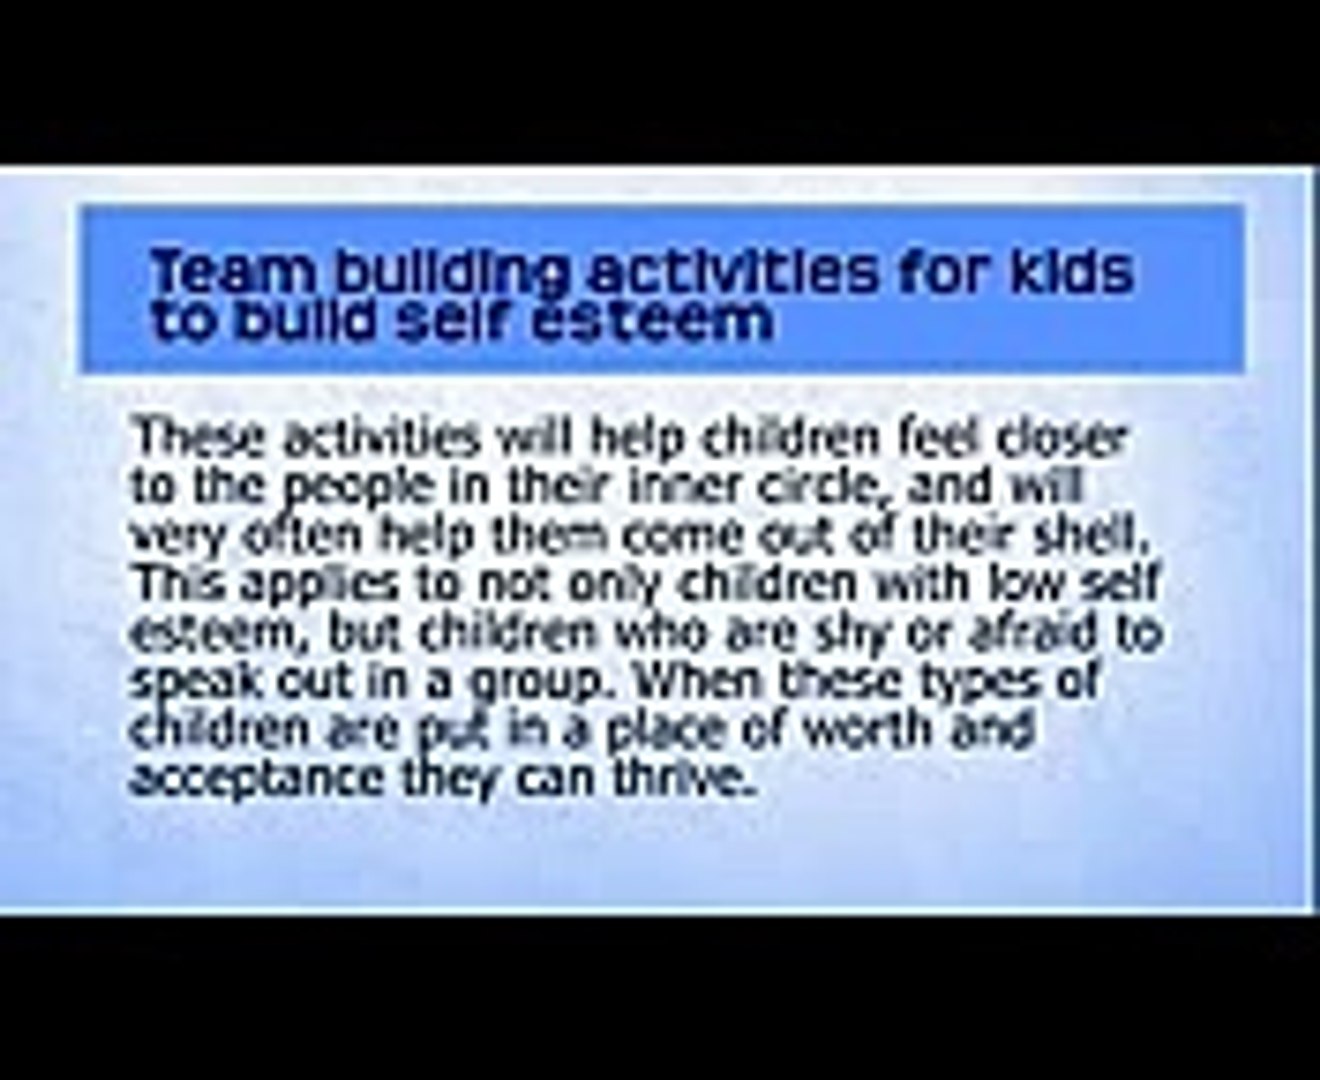 Team building activities for kids to build self esteem